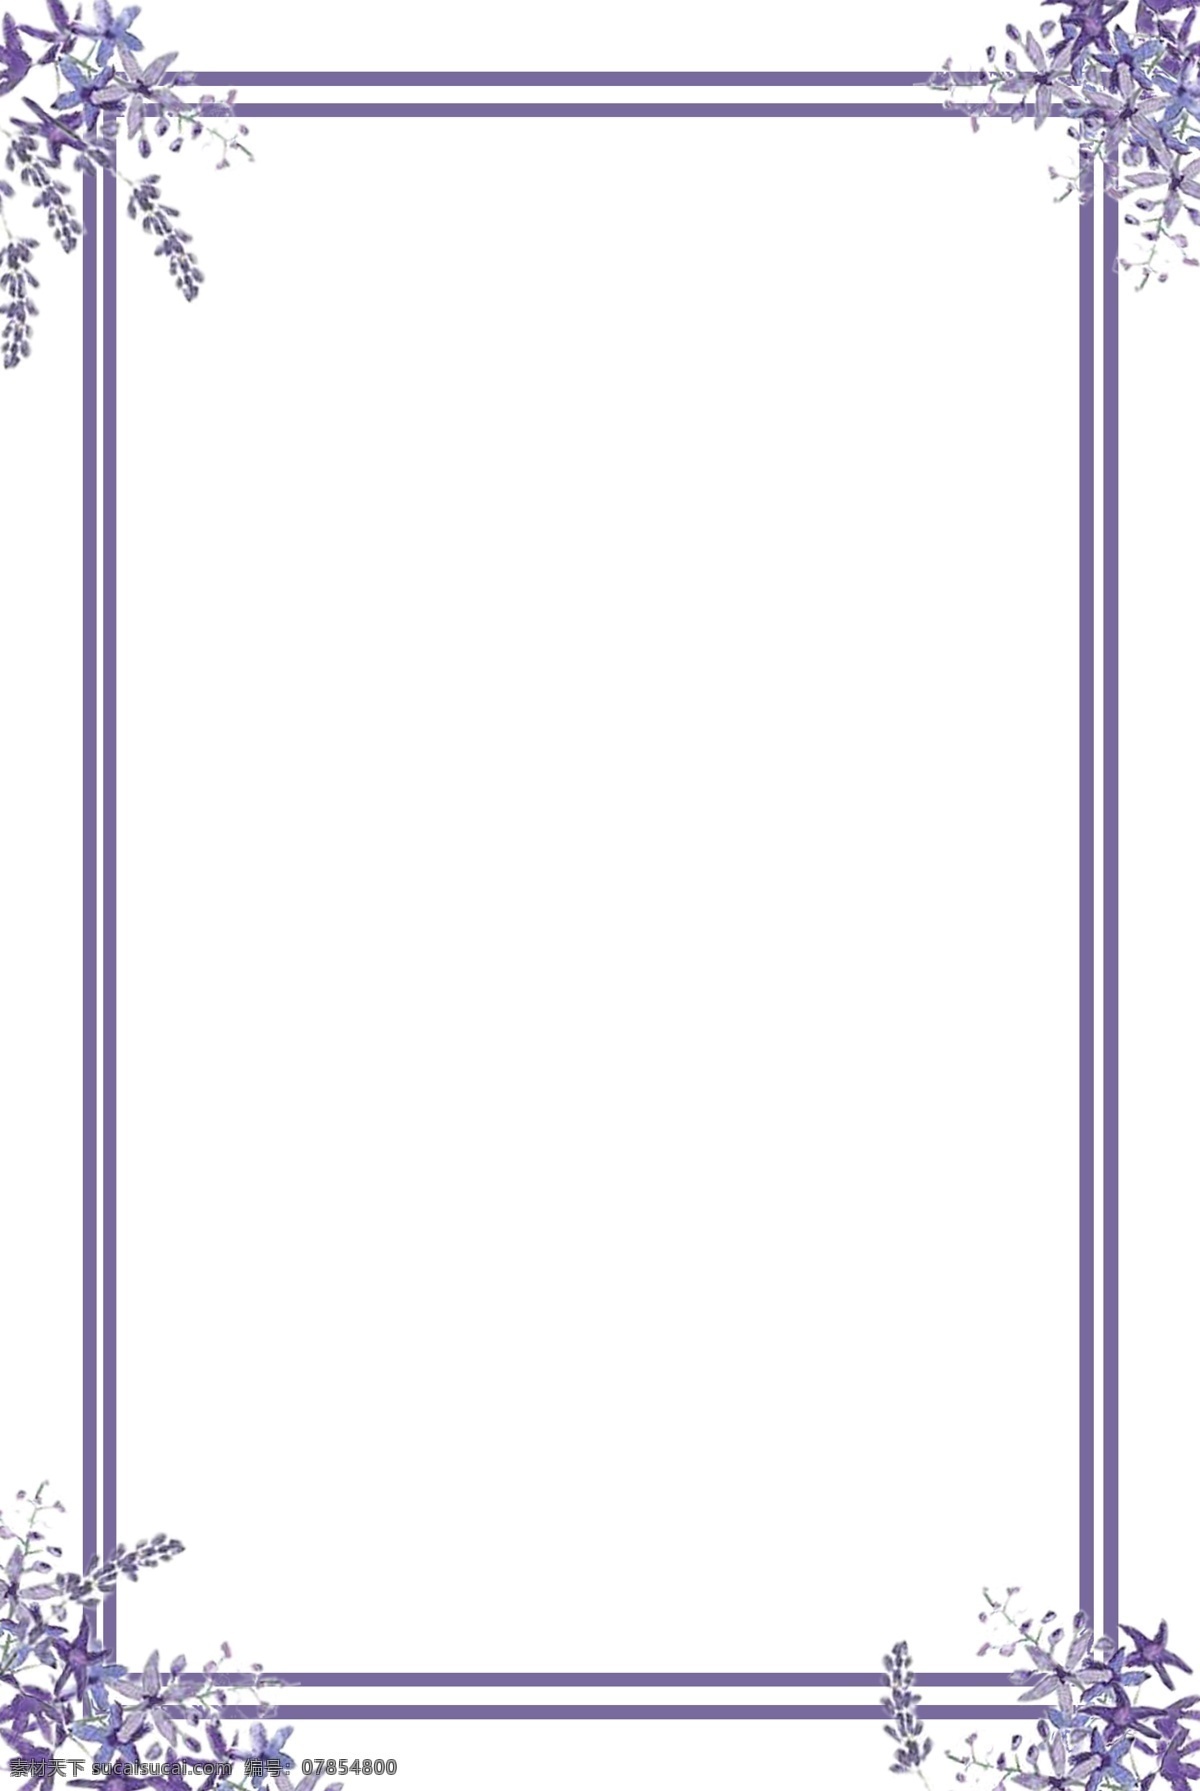 手绘 唯美 紫色 淡雅 花 物语 边框 手绘边框 创意边框 简约边框 唯美边框 花物语 紫色边框 大气 用于 学习交流 海报制作 装饰等